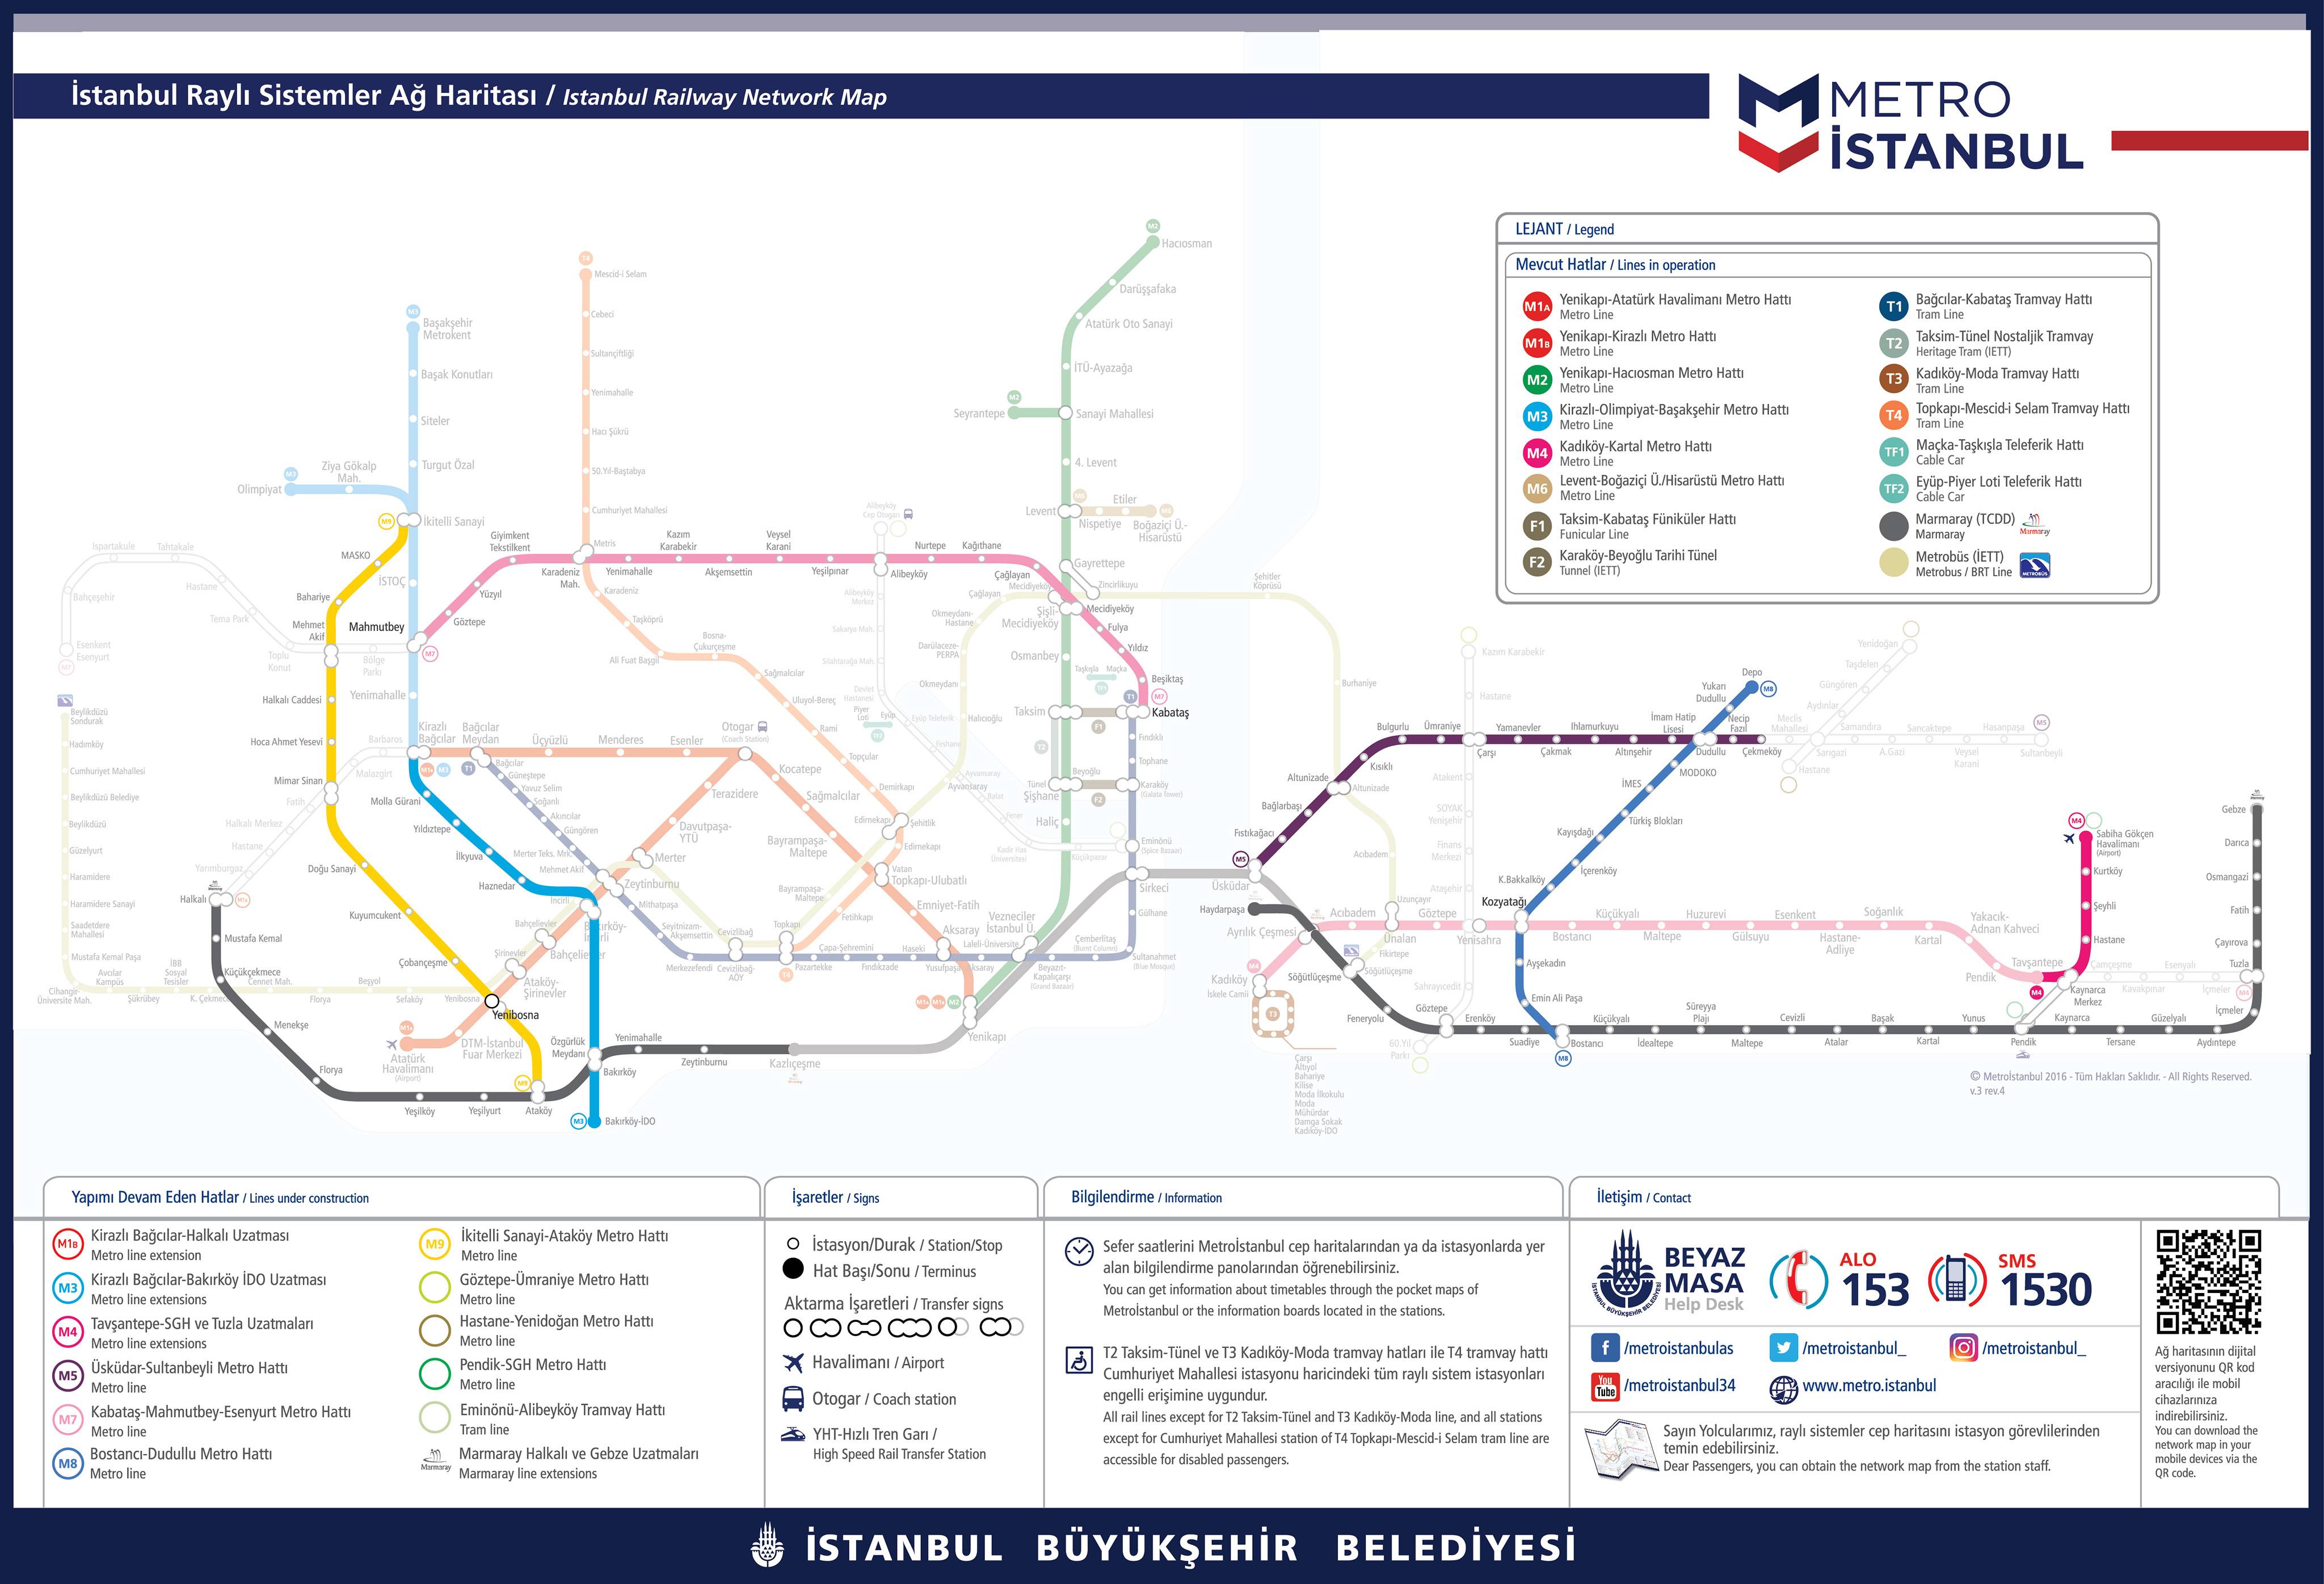 Все, что туристу нужно знать о метро стамбула: схема, расписание, стоимость проезда